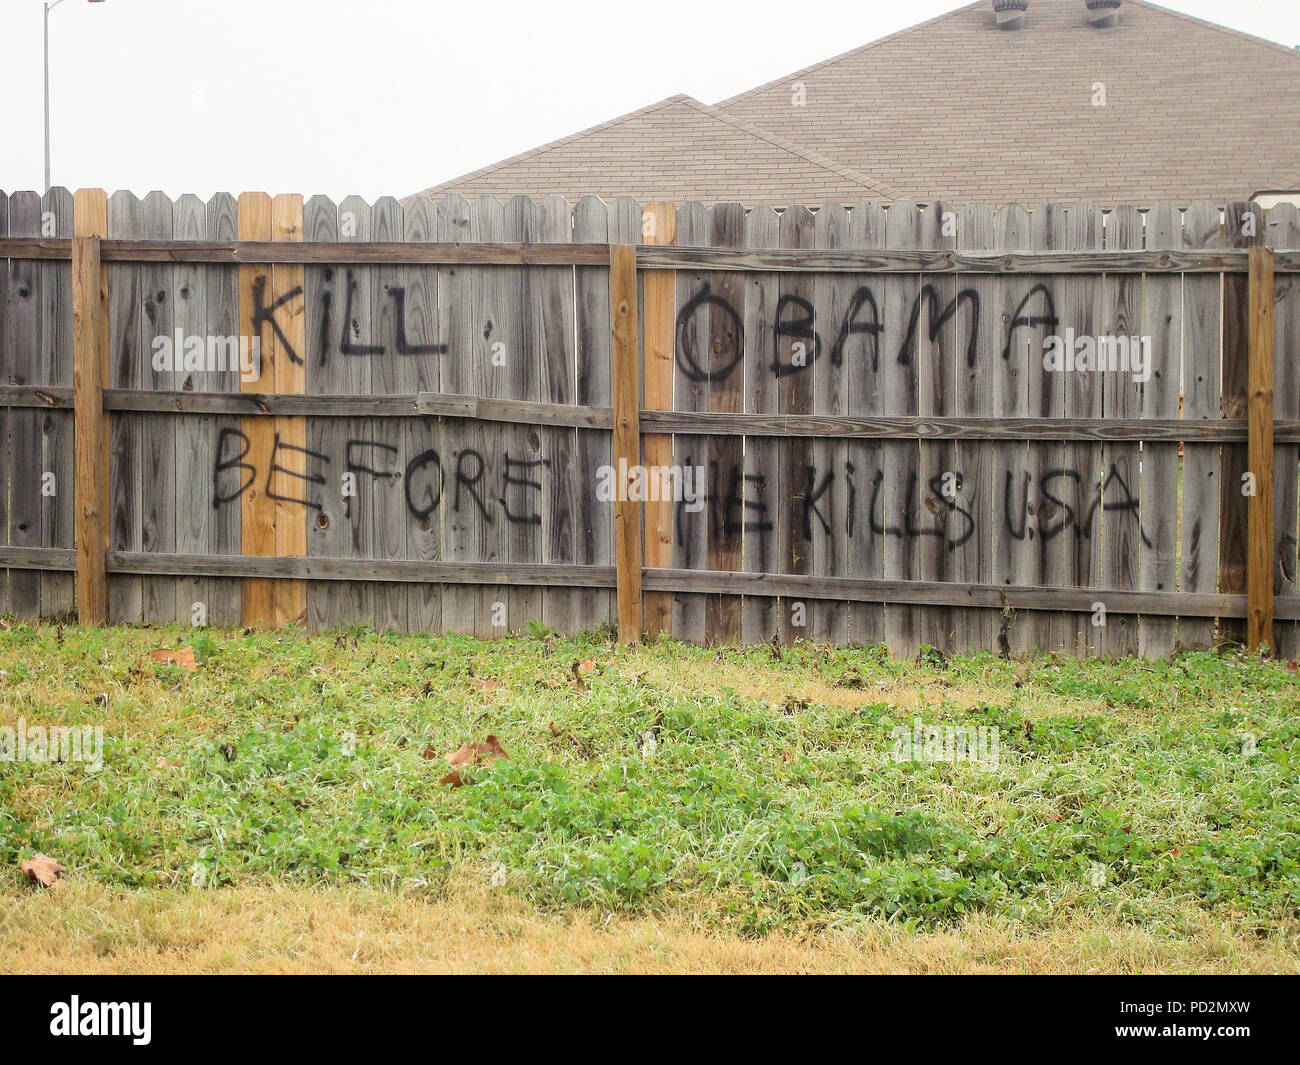 'Tuer Obama' graffiti sur une clôture en bois avec une menace de mort contre a inauguré récemment le président Obama (premier) Inauguration de College Station, Texas. Banque D'Images